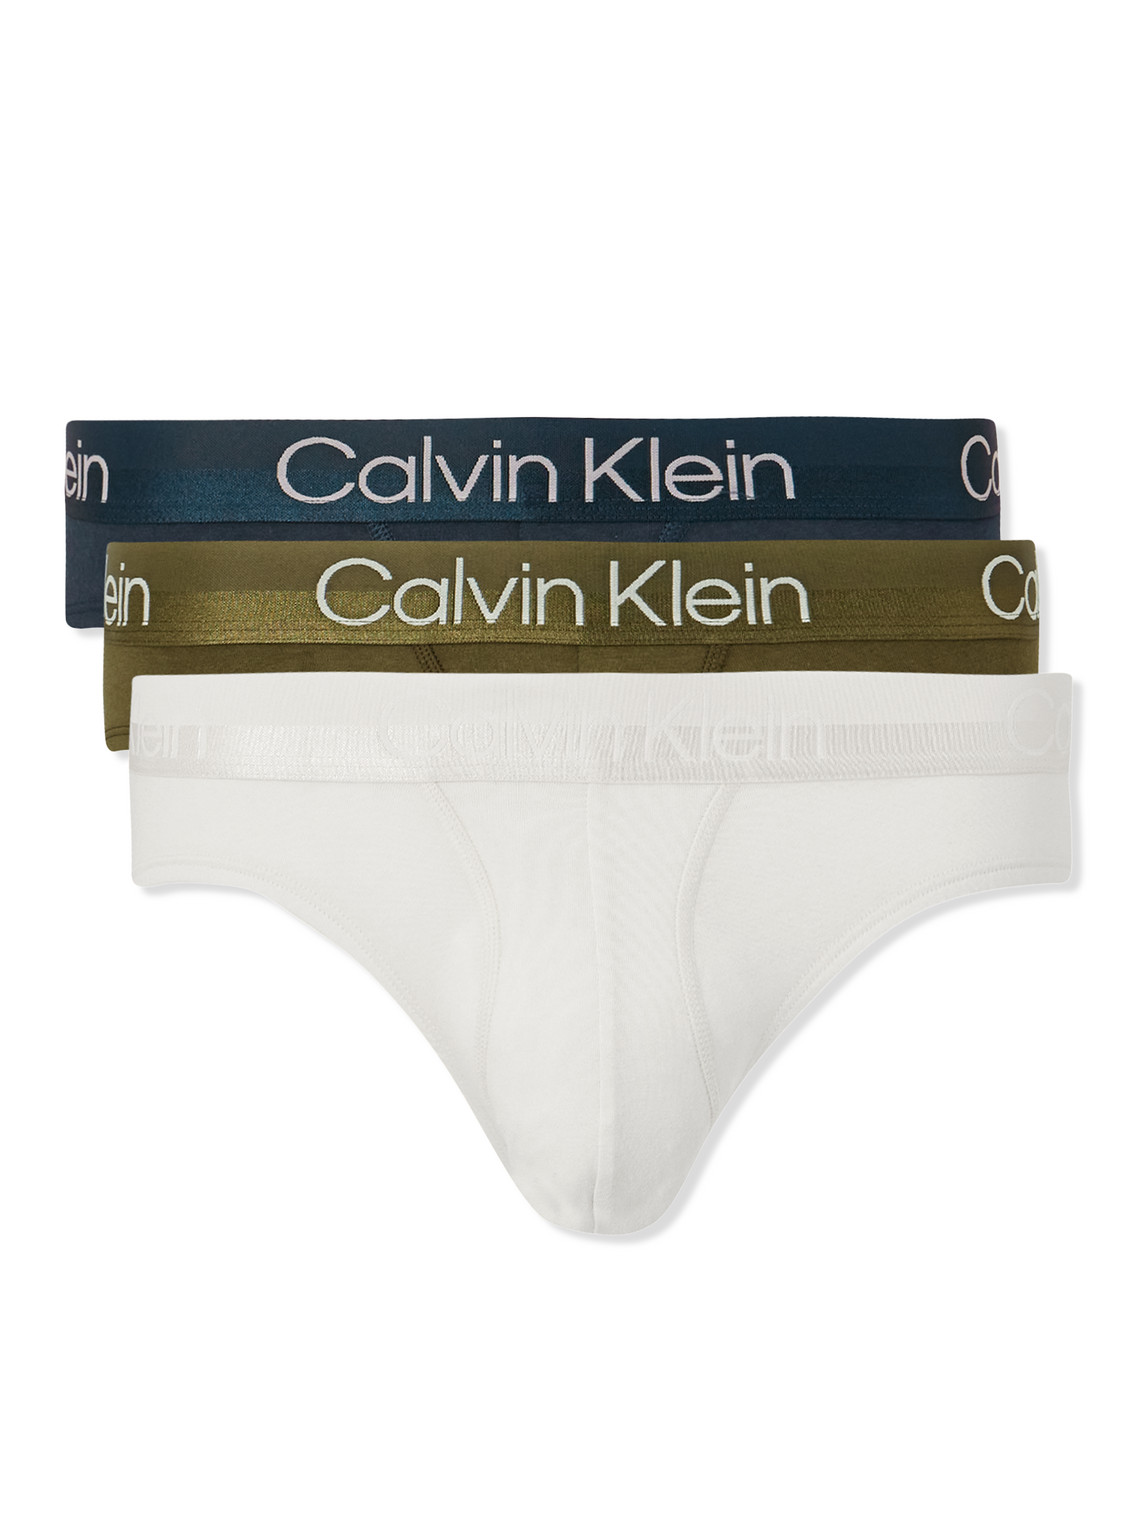 Calvin Klein Underwear, Three-Pack Stretch-Cotton Boxer Briefs, Men, Multi, S